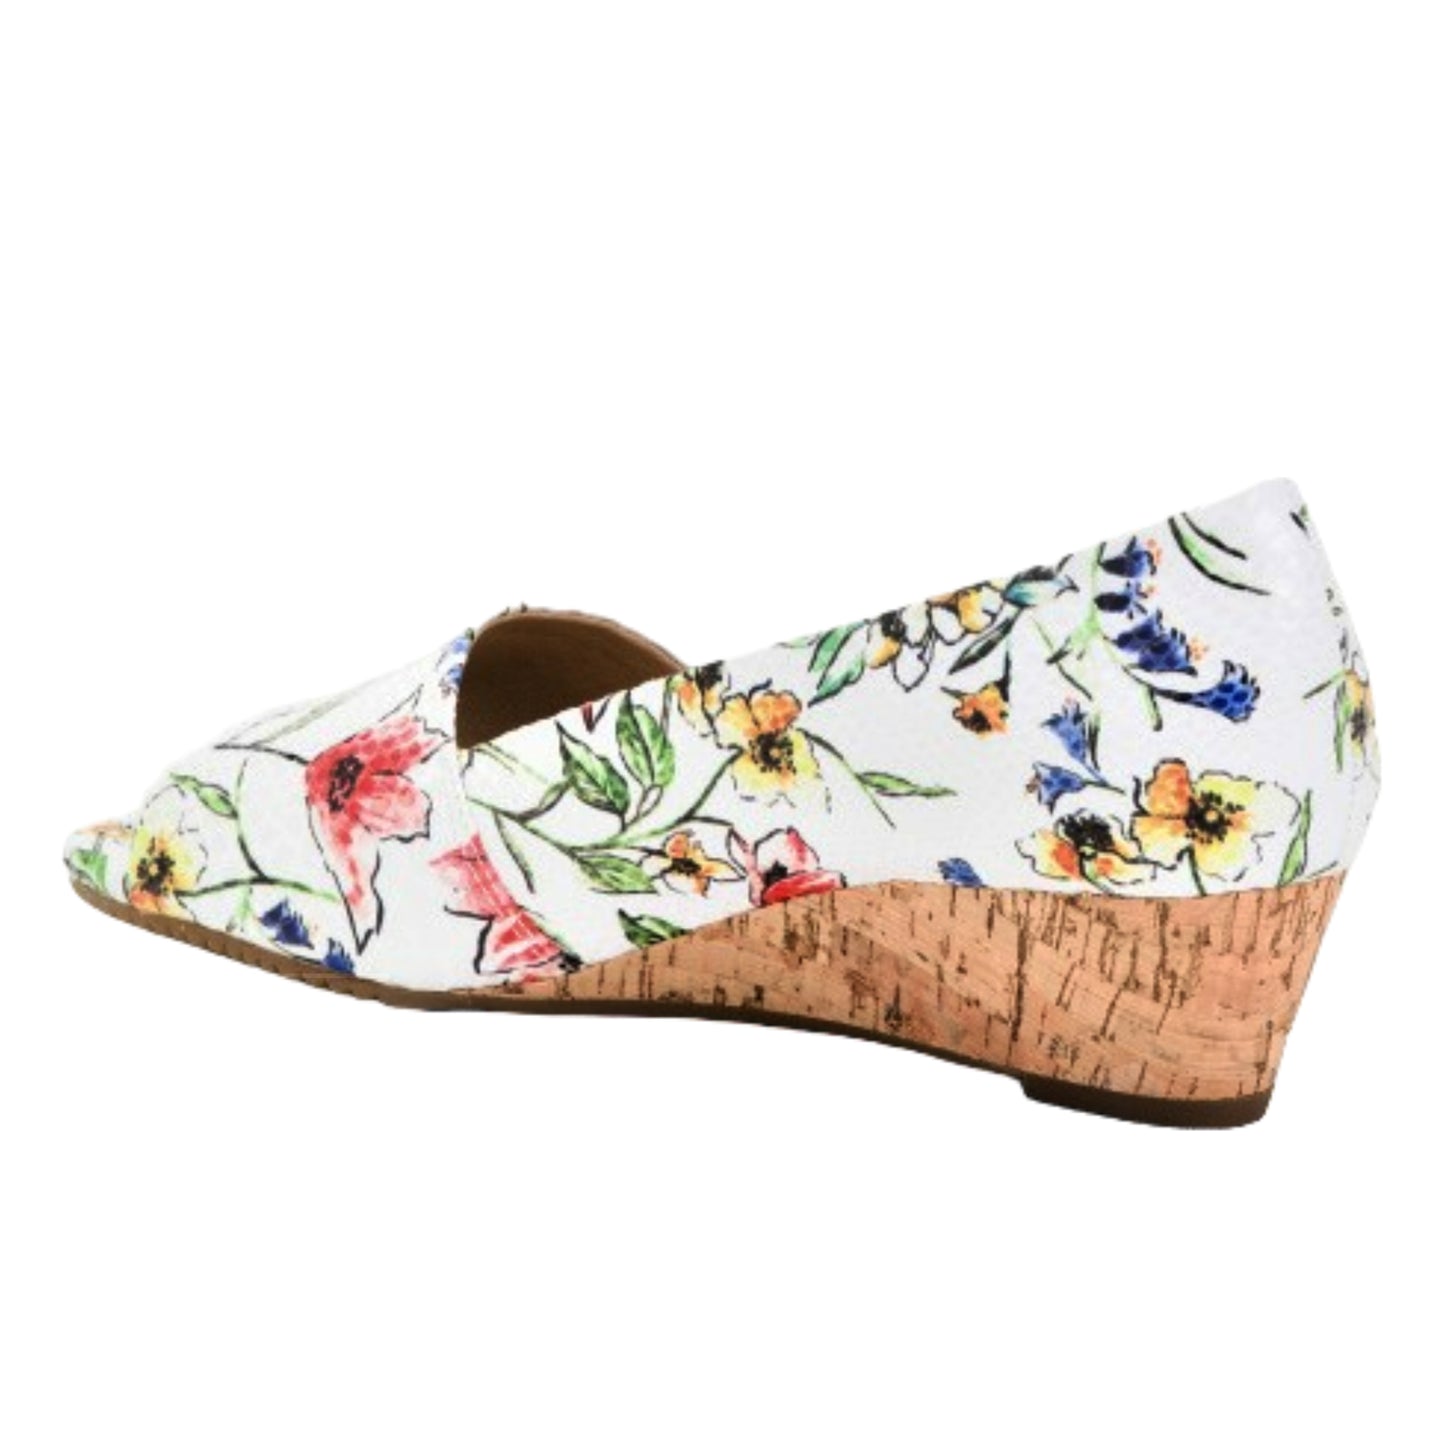 Aerosoles Women's Textured Floral Print Cork Wedge Heel Slide On Comfort Shoes